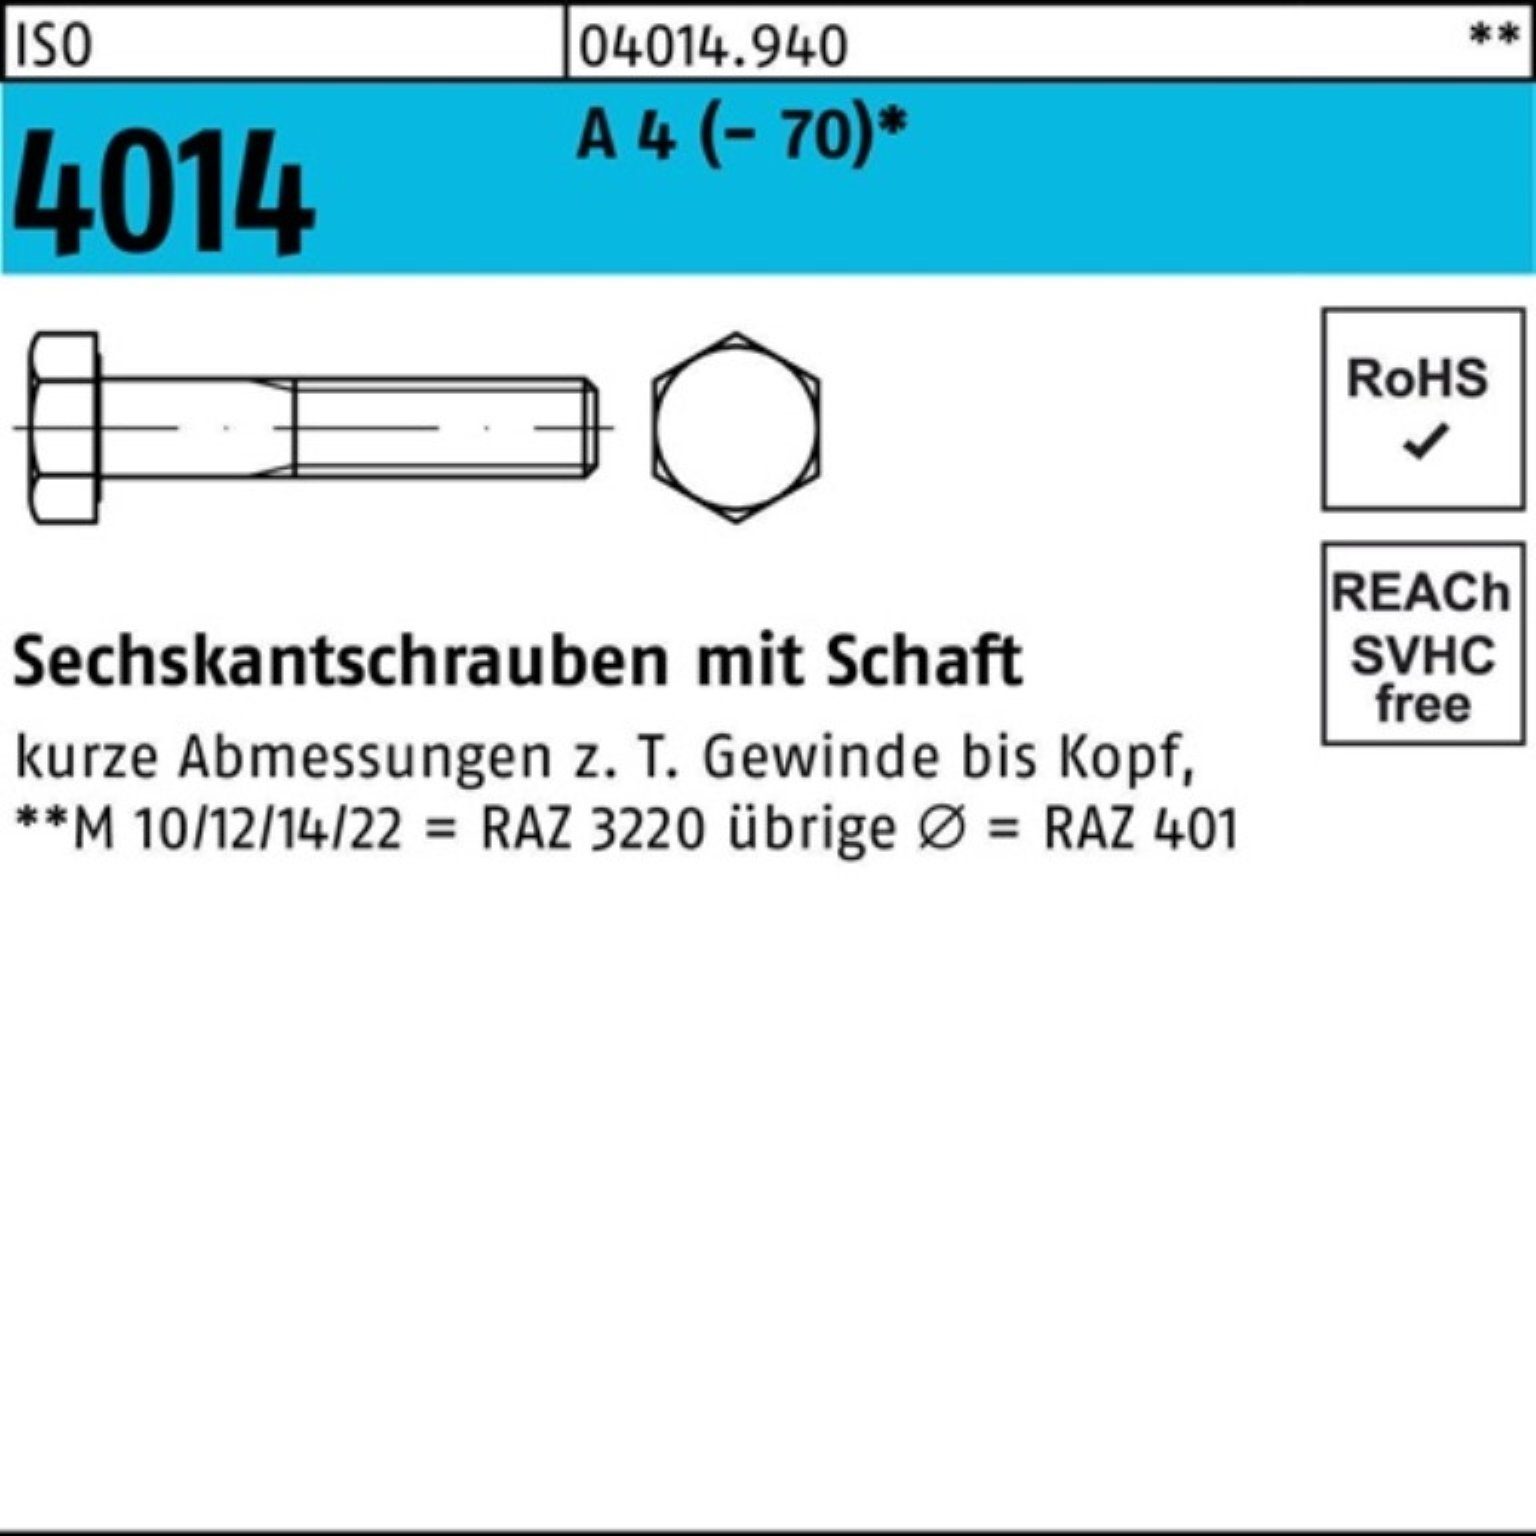 1 A M18x Bufab Schaft ISO 90 Stü Pack 4 (70) Sechskantschraube 100er 4014 Sechskantschraube